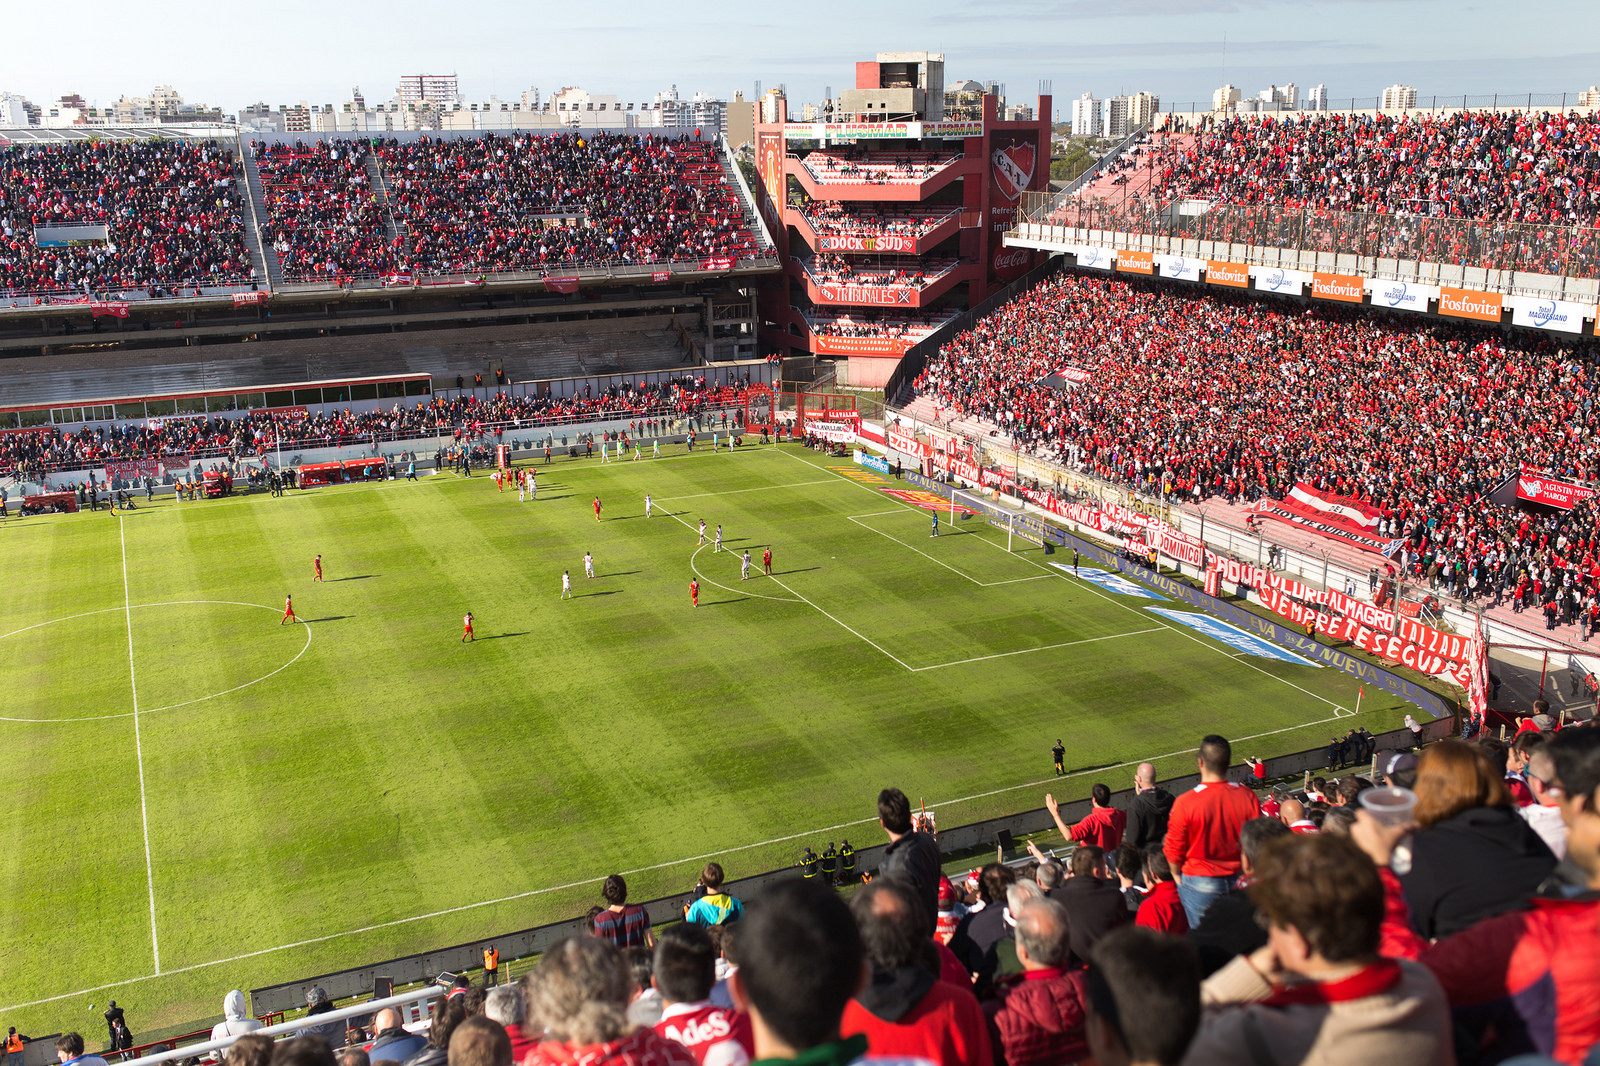 12 Surprising Facts About Estadio Libertadores De América 